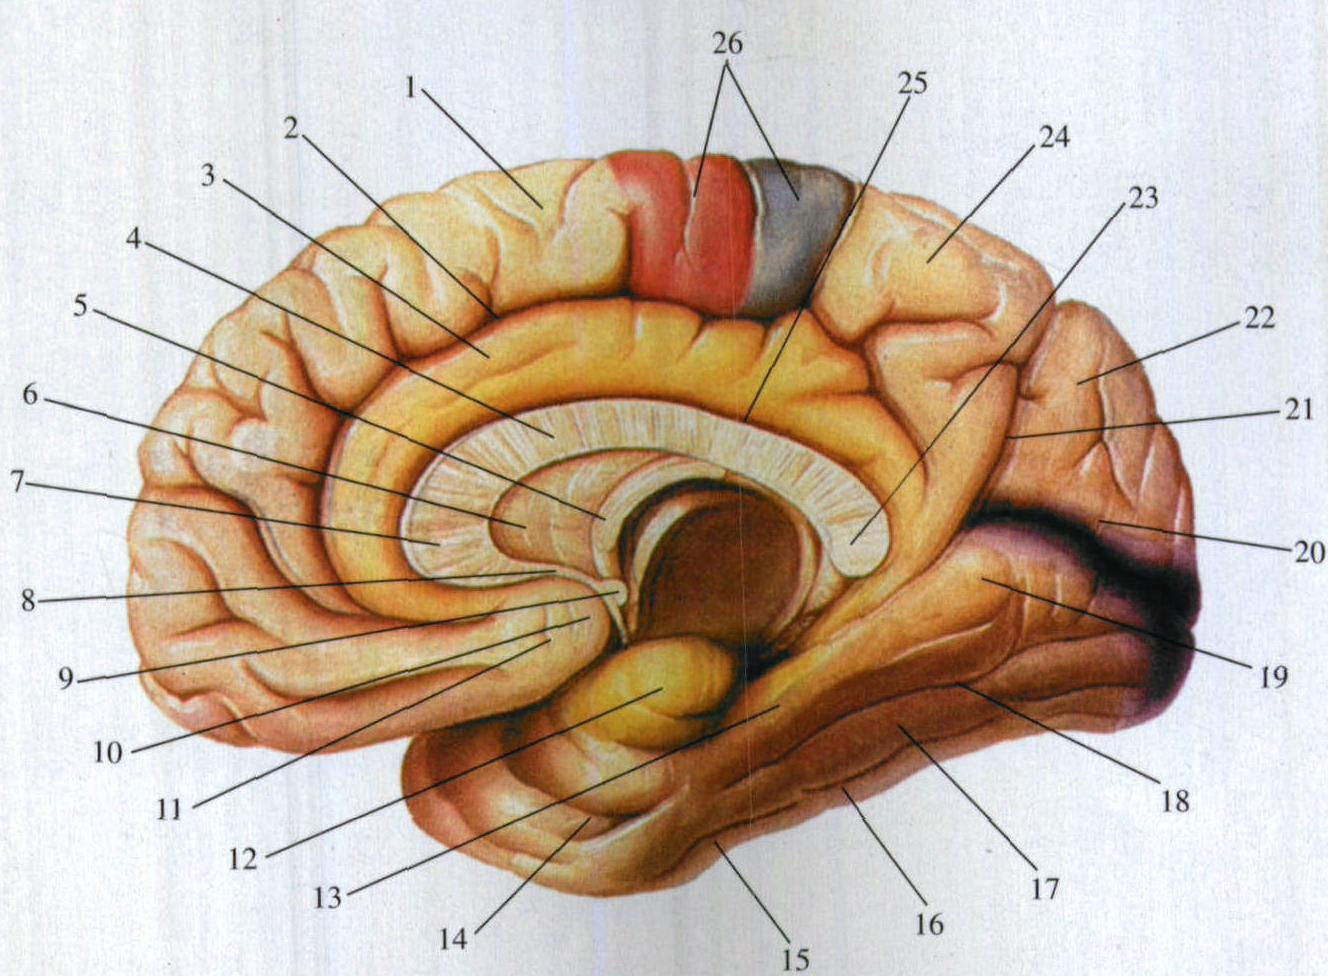 图1-26 大脑半球(一)-临床解剖学-医学